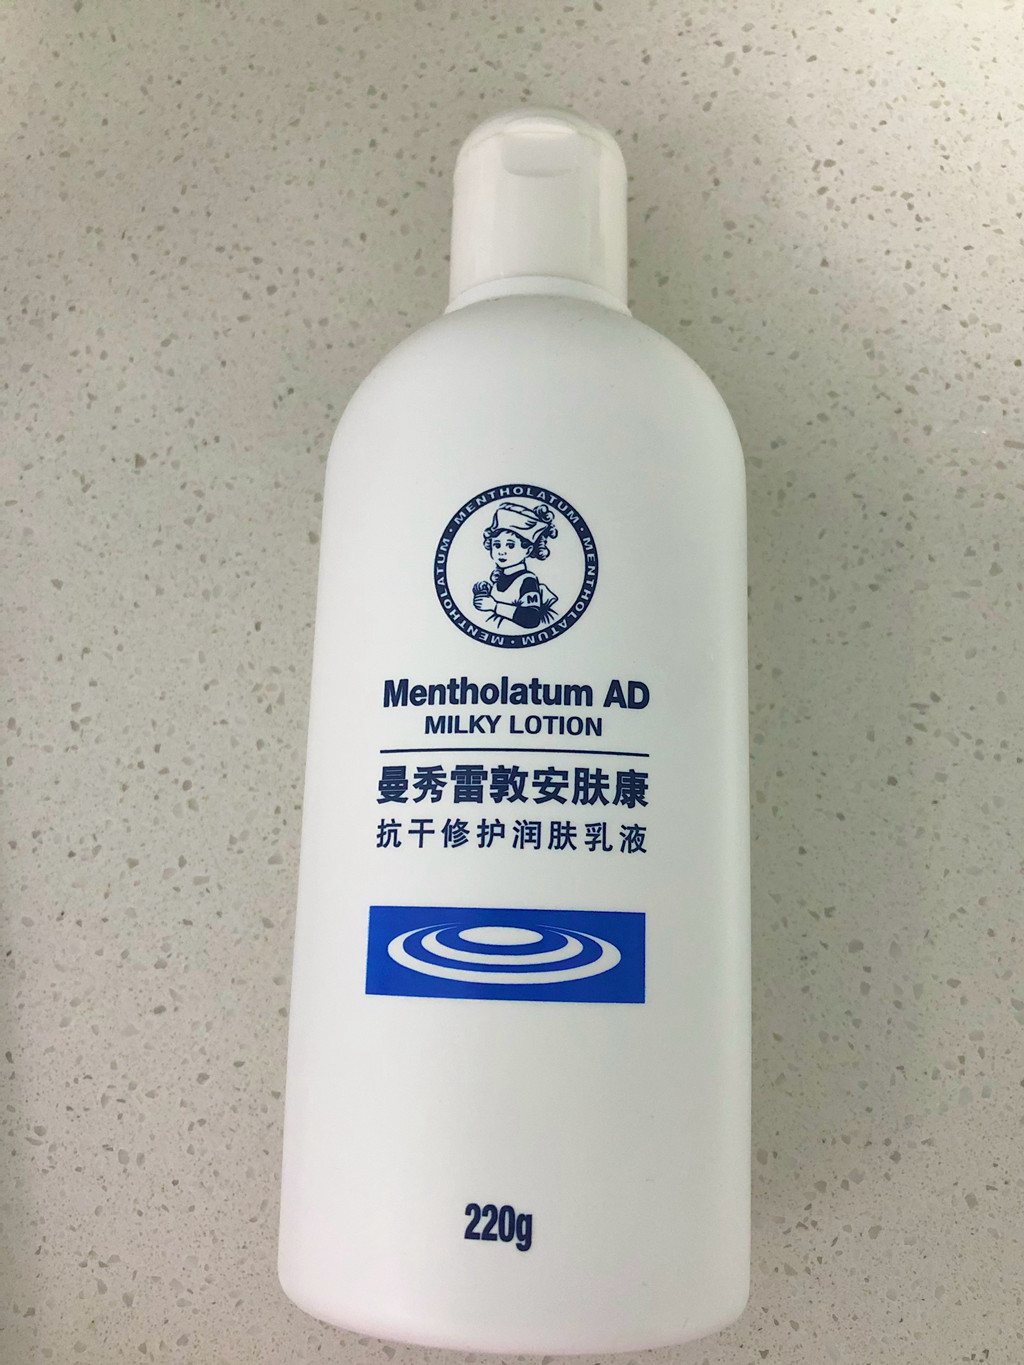 近期空瓶：身体乳、洗发水、界面、粉扑、香水